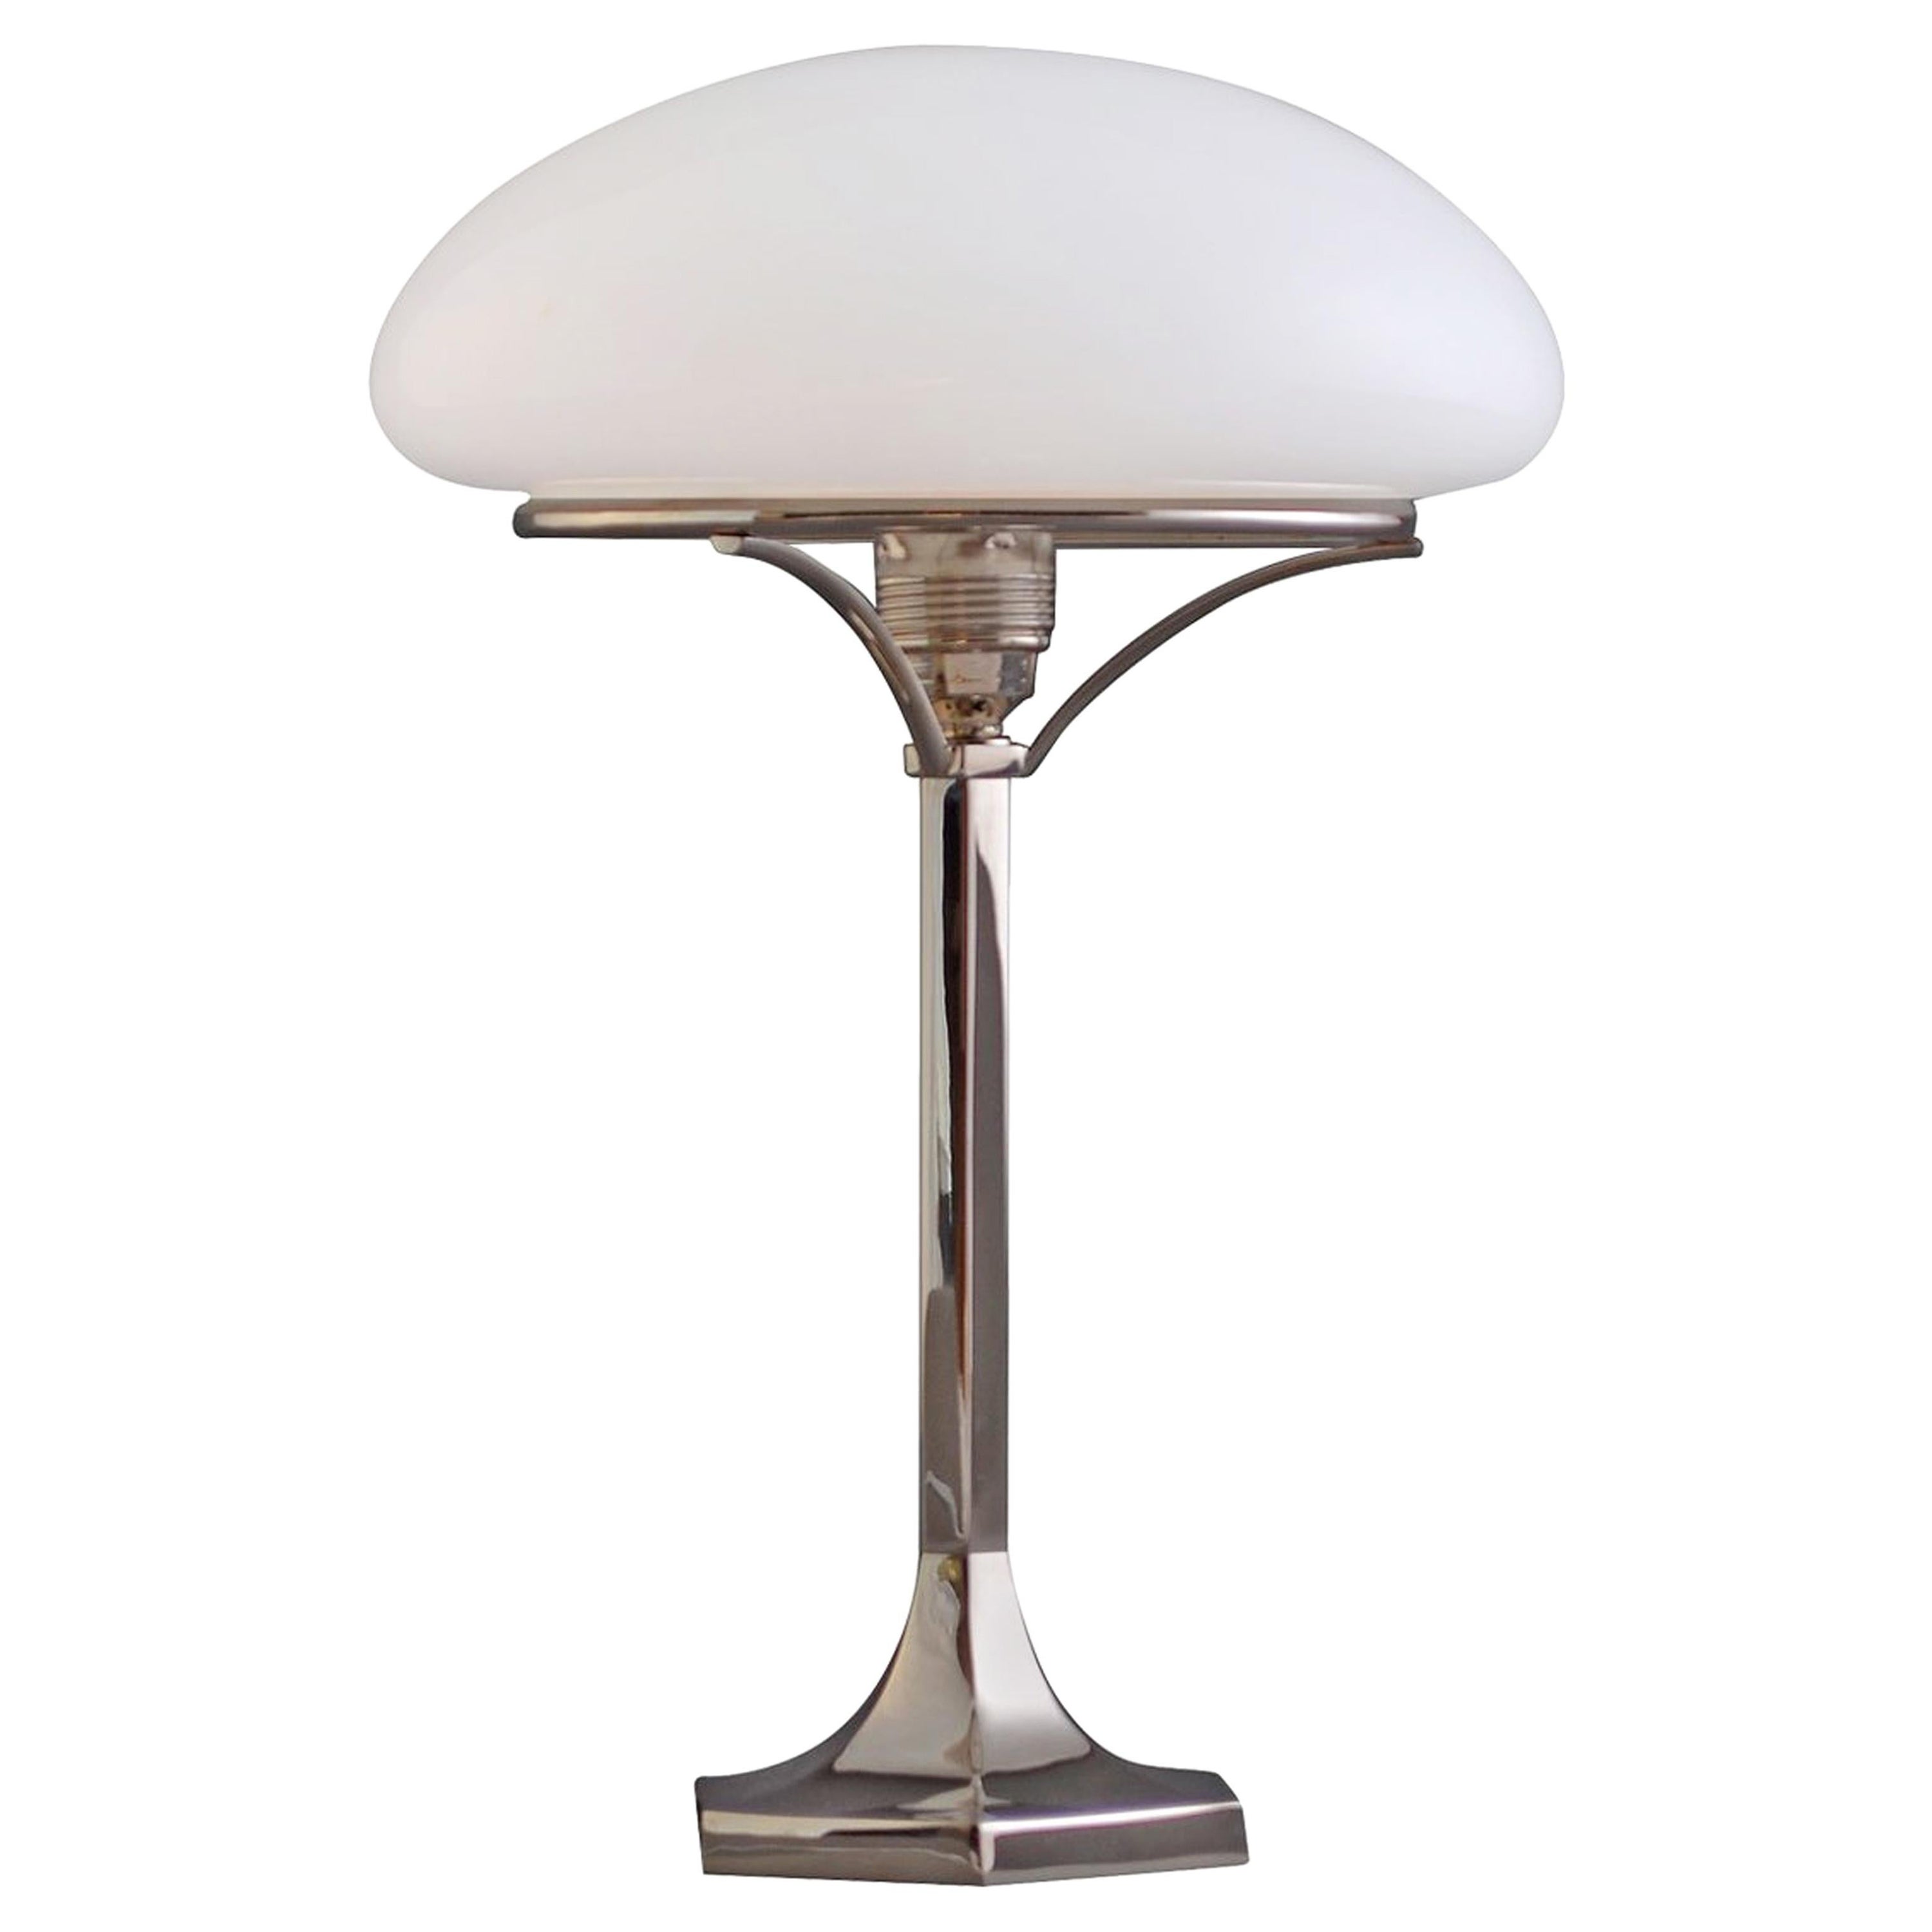 Woka Lamps Table Lamps